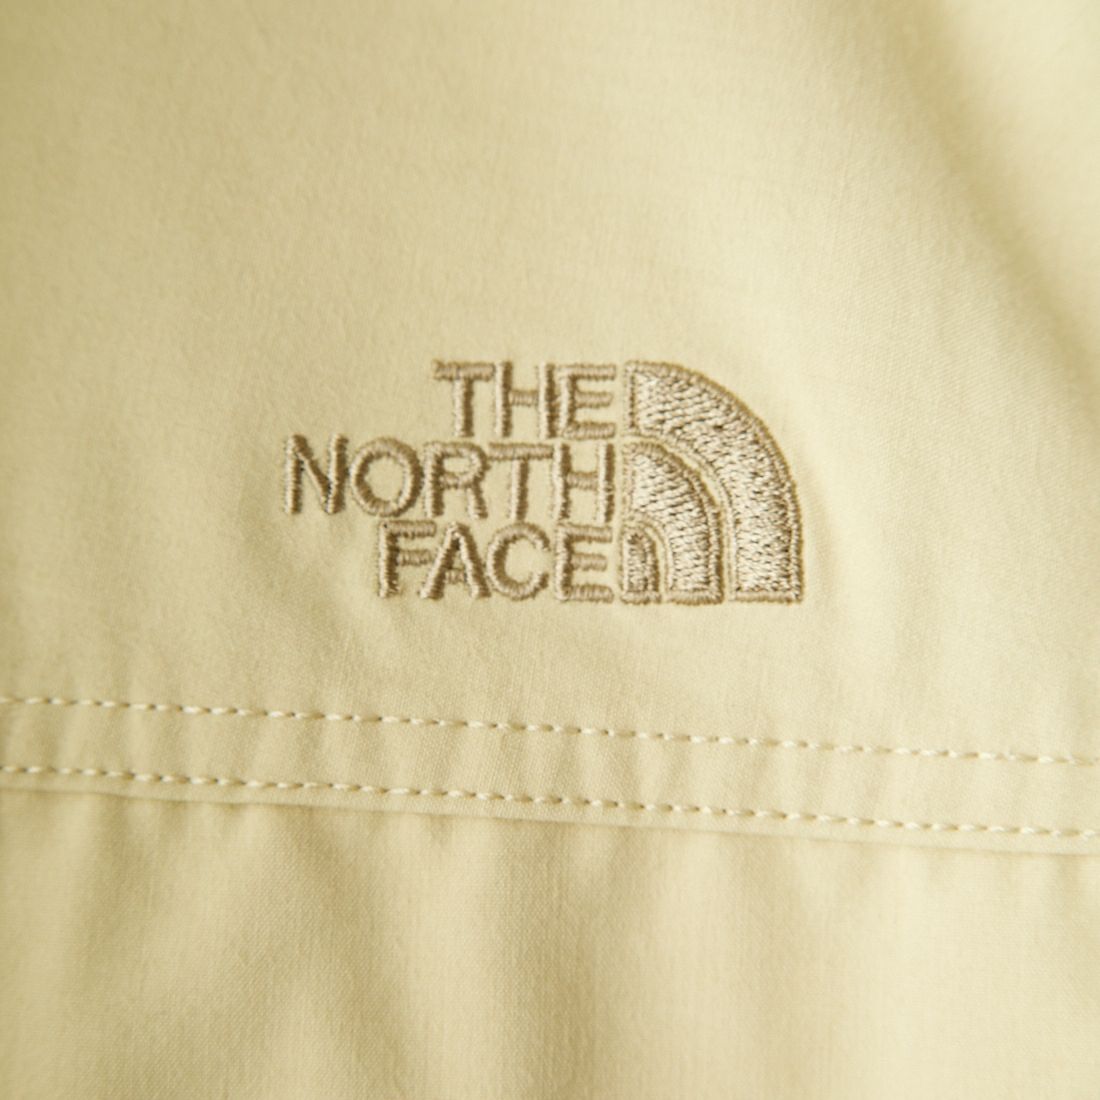 THE NORTH FACE [ザ ノースフェイス] ファイヤーフライキャノピーシャツ [NR12231] GV